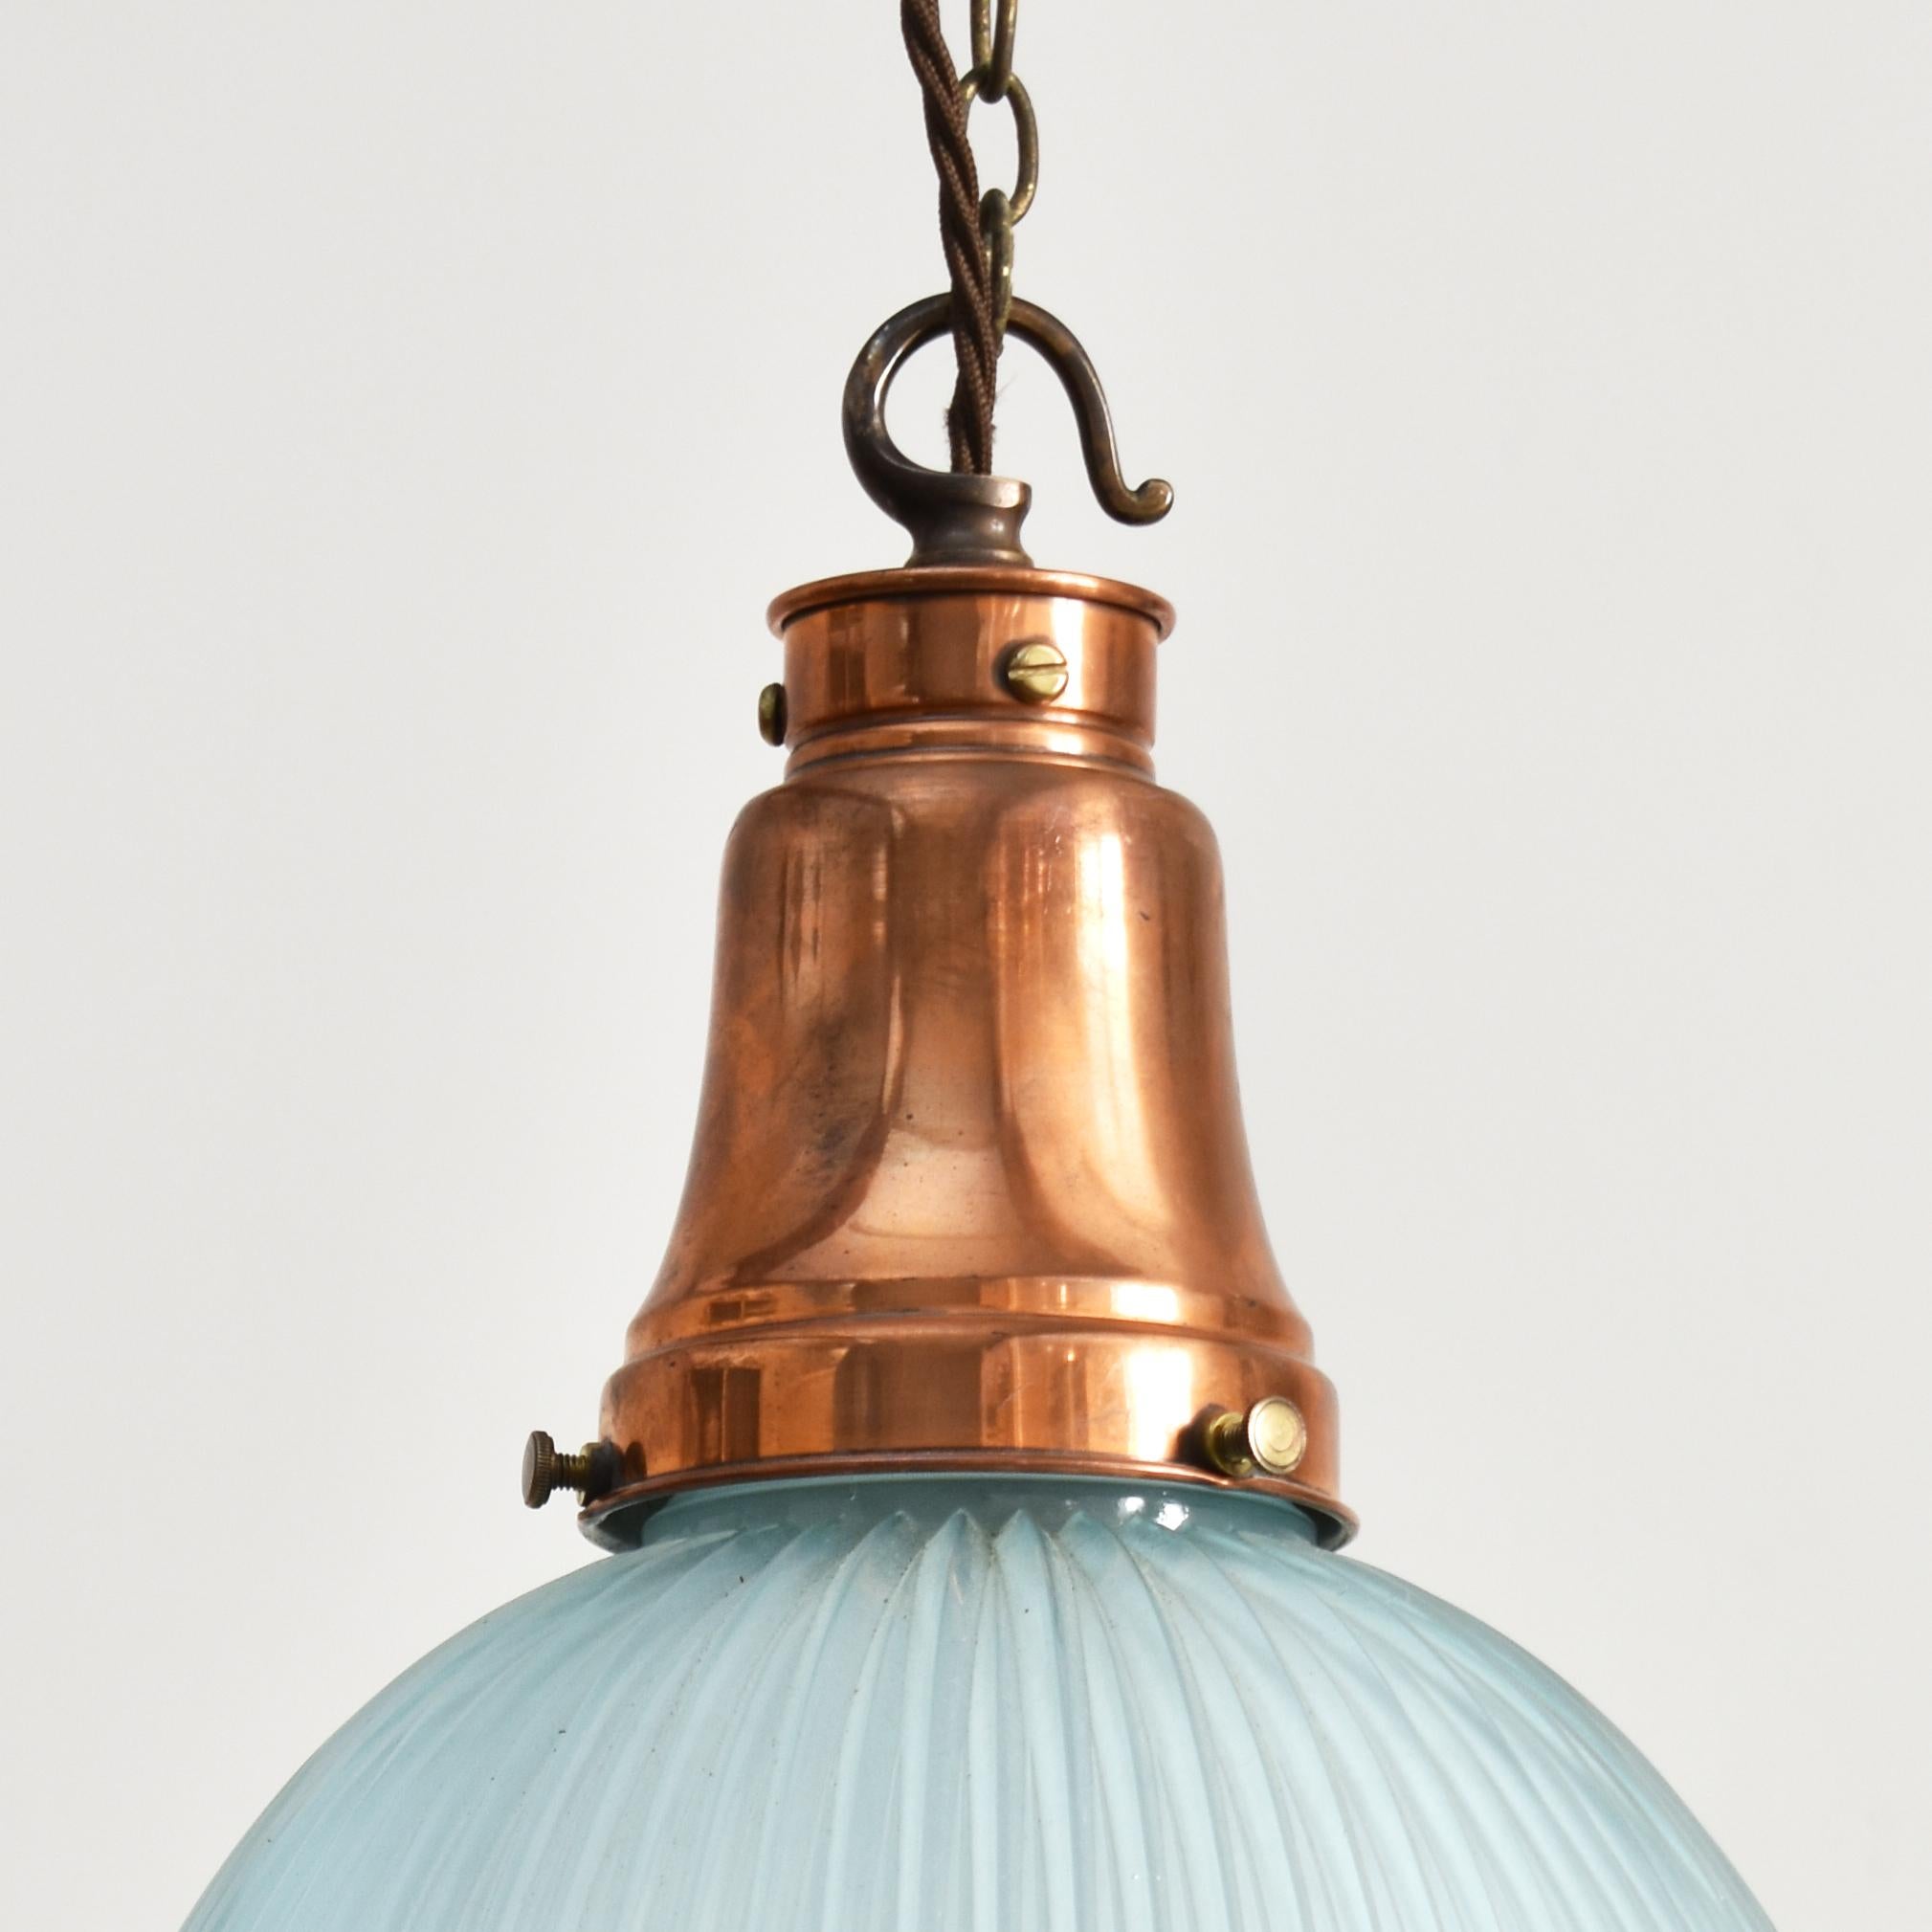 Lampe pendante ancienne en Holophane - Teinte bleue - A

Lampe à cloche en verre vintage fabriquée par 'Holophane' dans une variation inhabituelle de couleur de verre bleu. La lampe est dotée d'une galerie GEC en laiton poli, estampillée de la